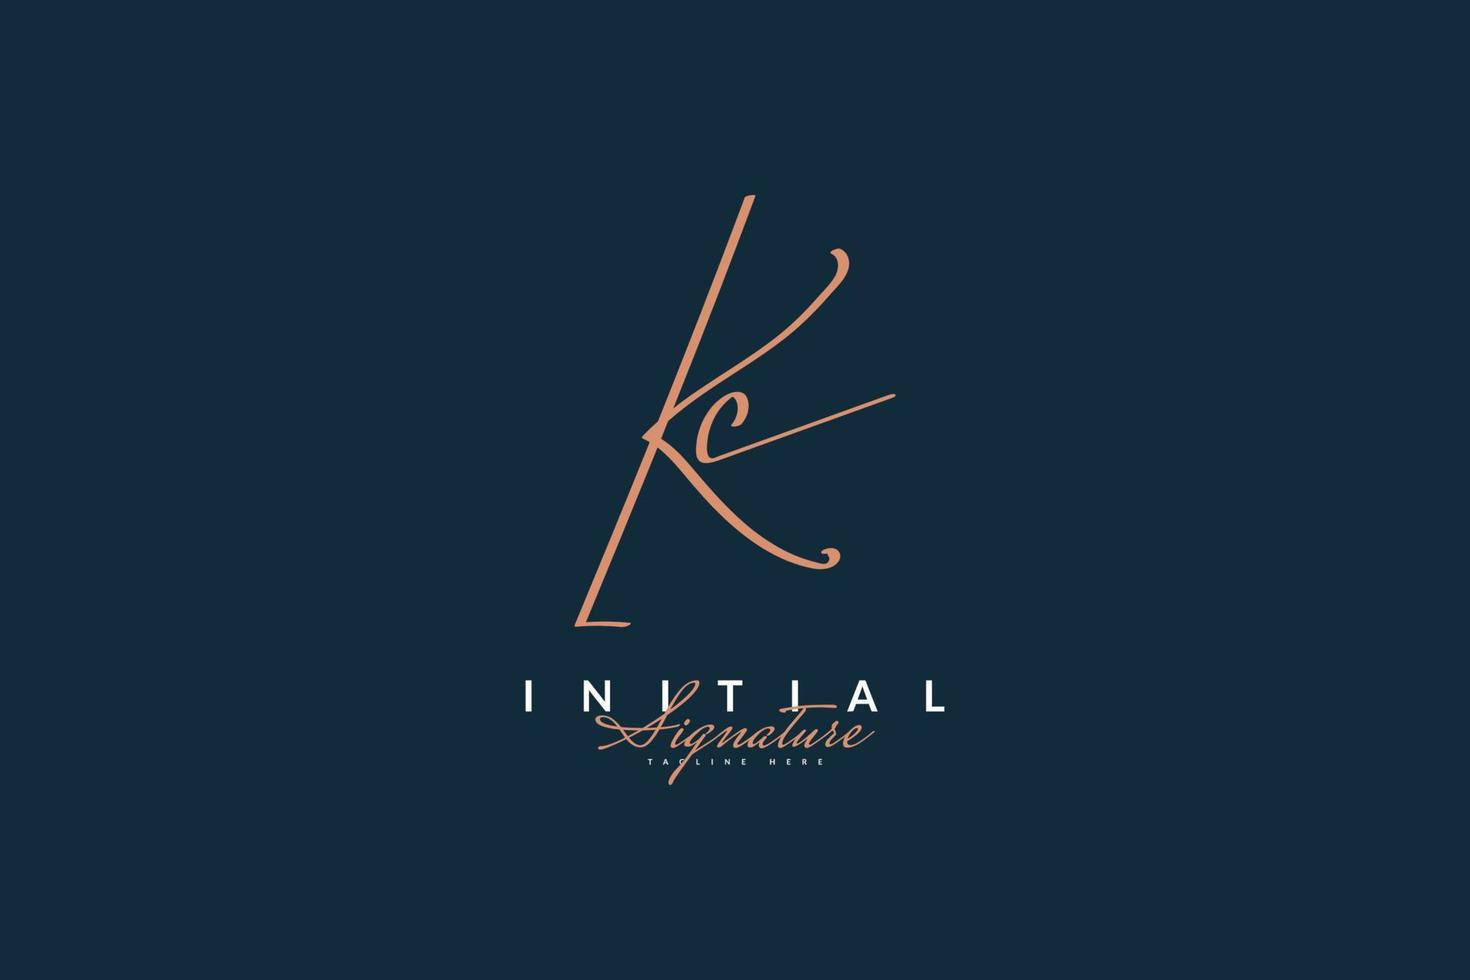 Diseño de logotipo inicial k y c con estilo de escritura a mano. Logotipo o símbolo de la firma kc para bodas, moda, joyería, boutique, identidad botánica, floral y comercial. vector